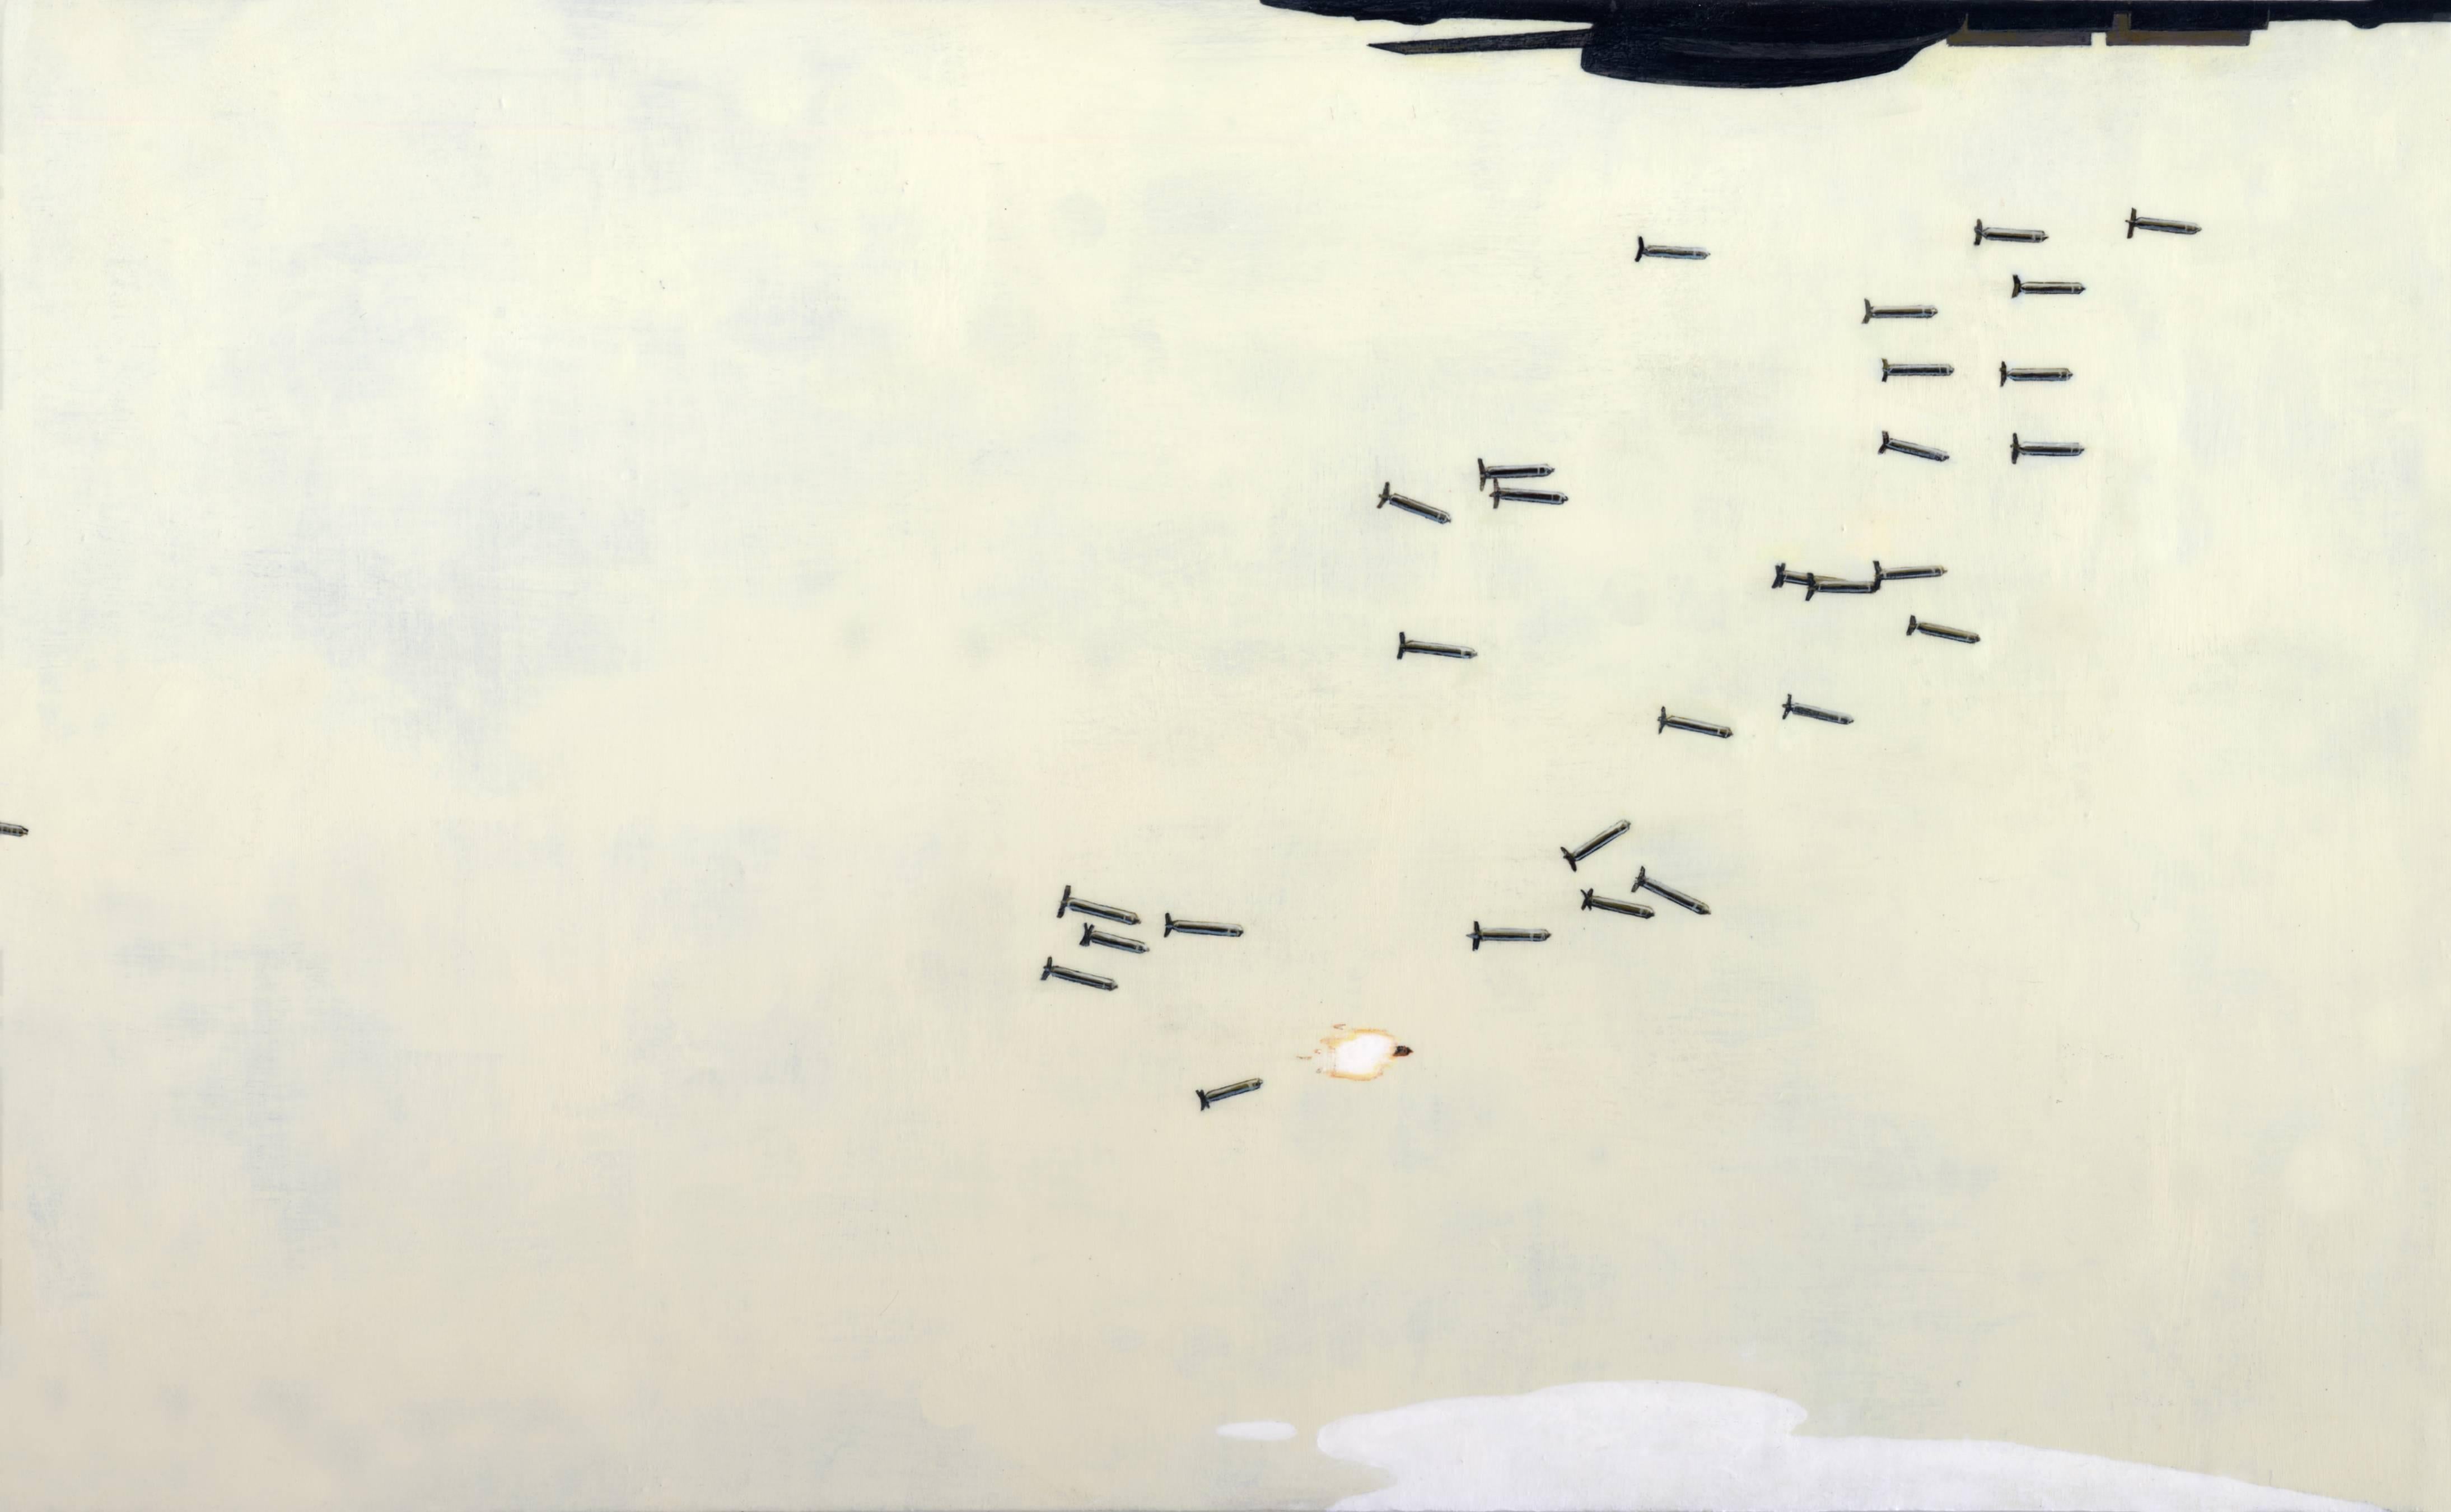 Les bombes qui jaillissent dans l'air - Painting de Adam Mysock